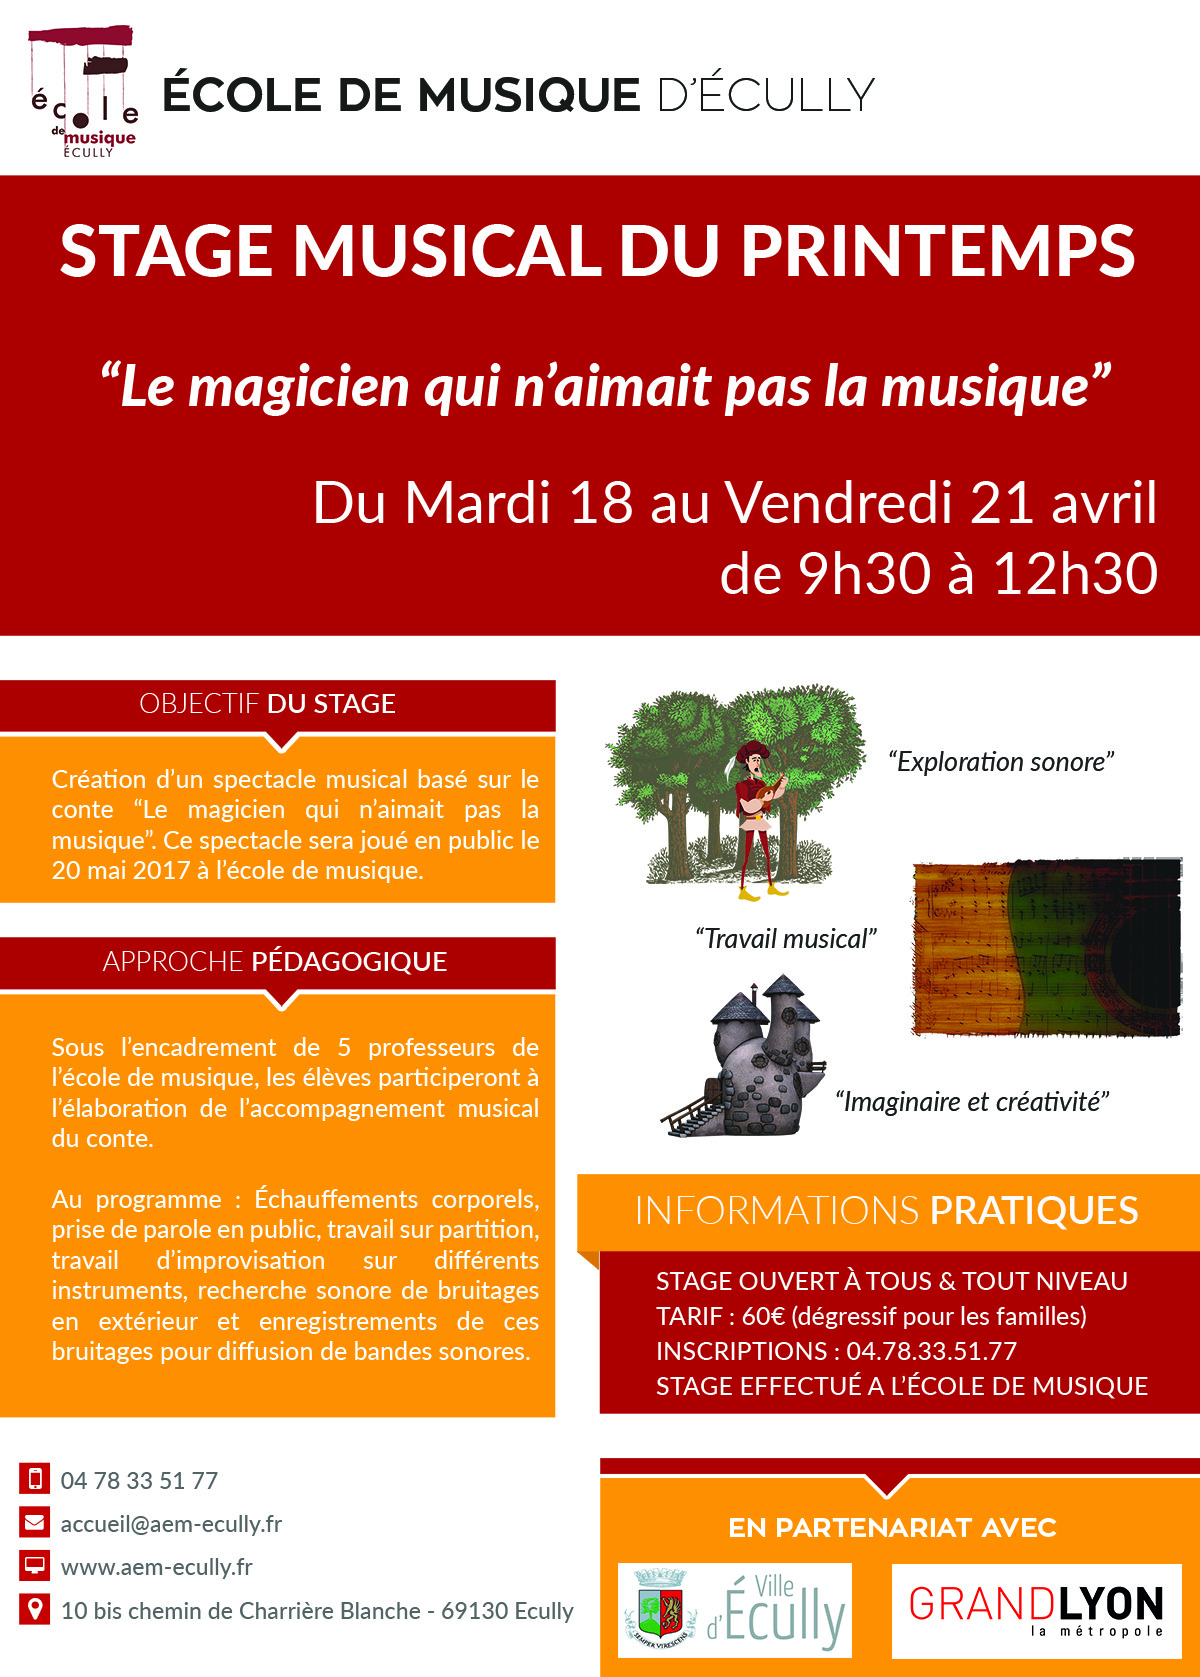 Affiche stage musical du printemps 2017 proposé par l'école de musique d'Ecully